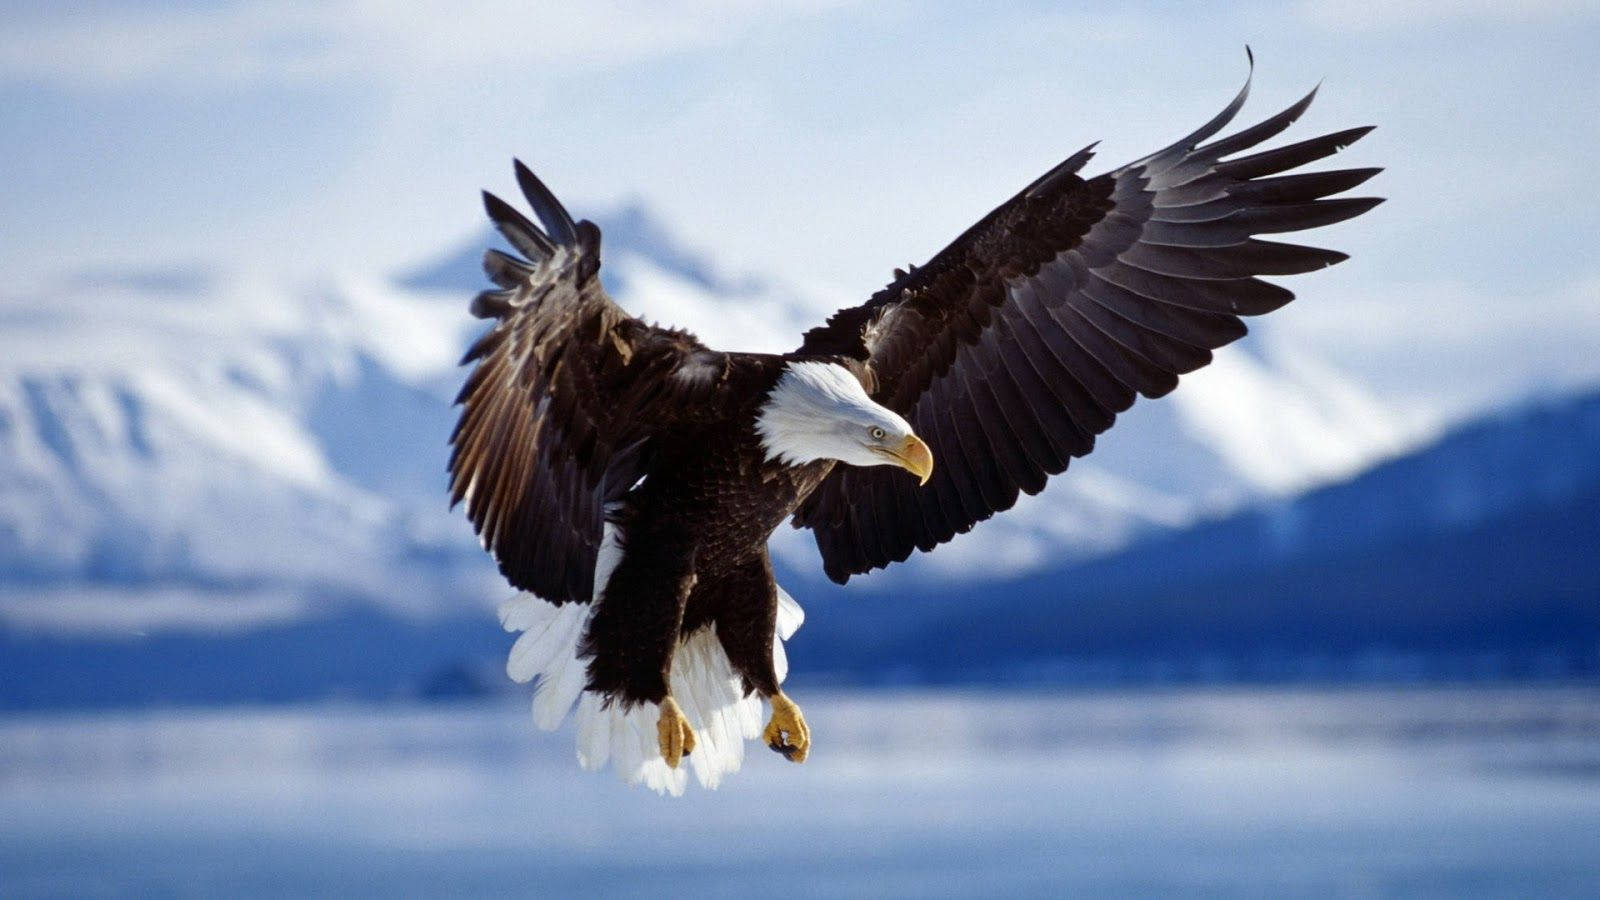 Aguila Kristede Vinger På Antarktis himlen. Wallpaper